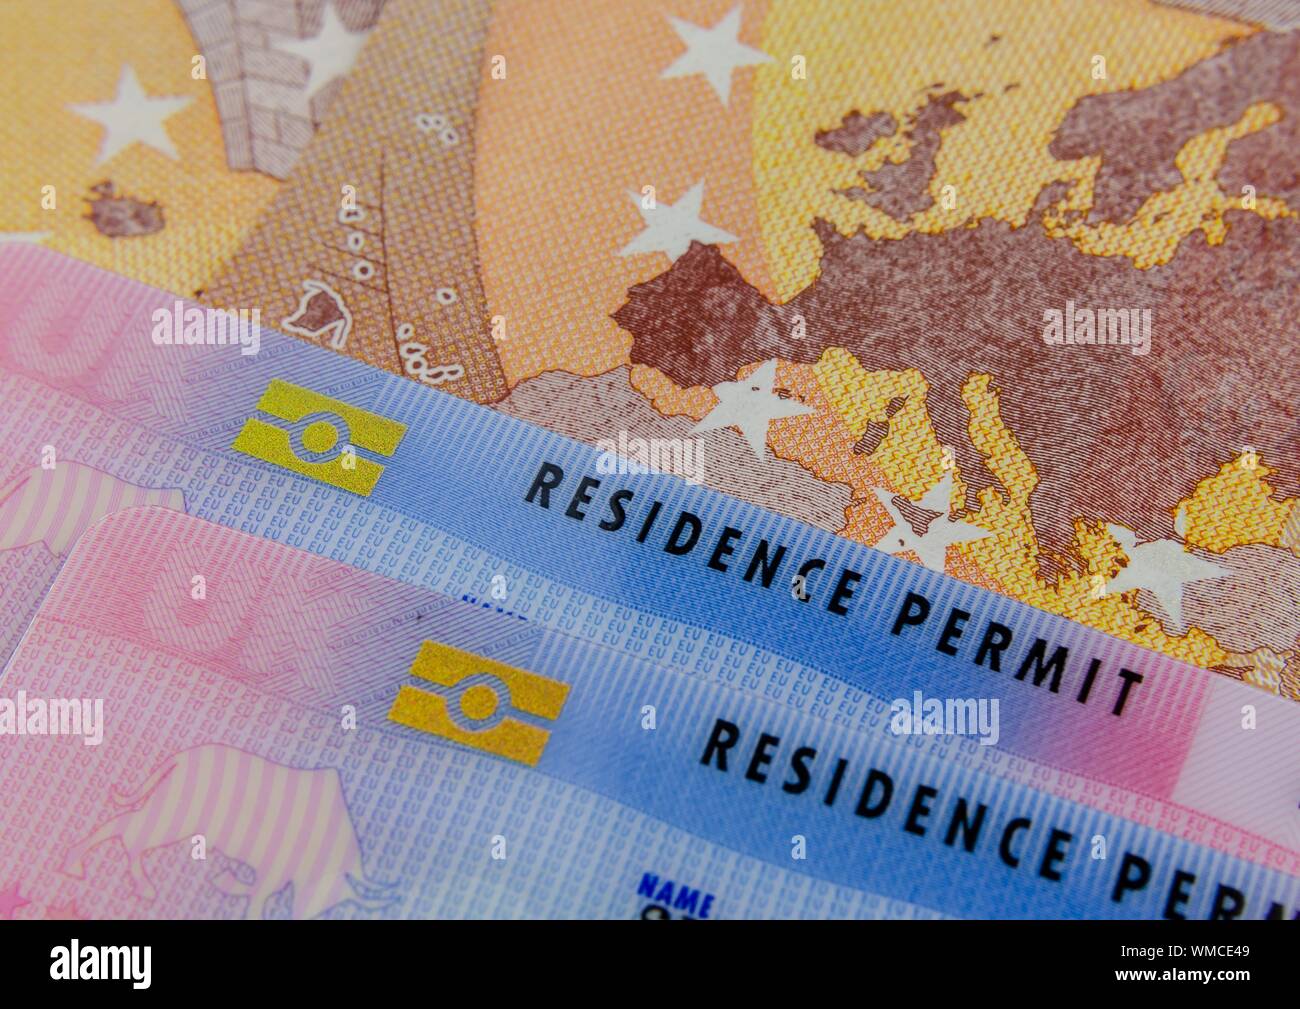 Cartes de séjour biométrique britannique et une carte de l'UE sur le billet d'Euro. Photo concept pour l'immigration. Banque D'Images